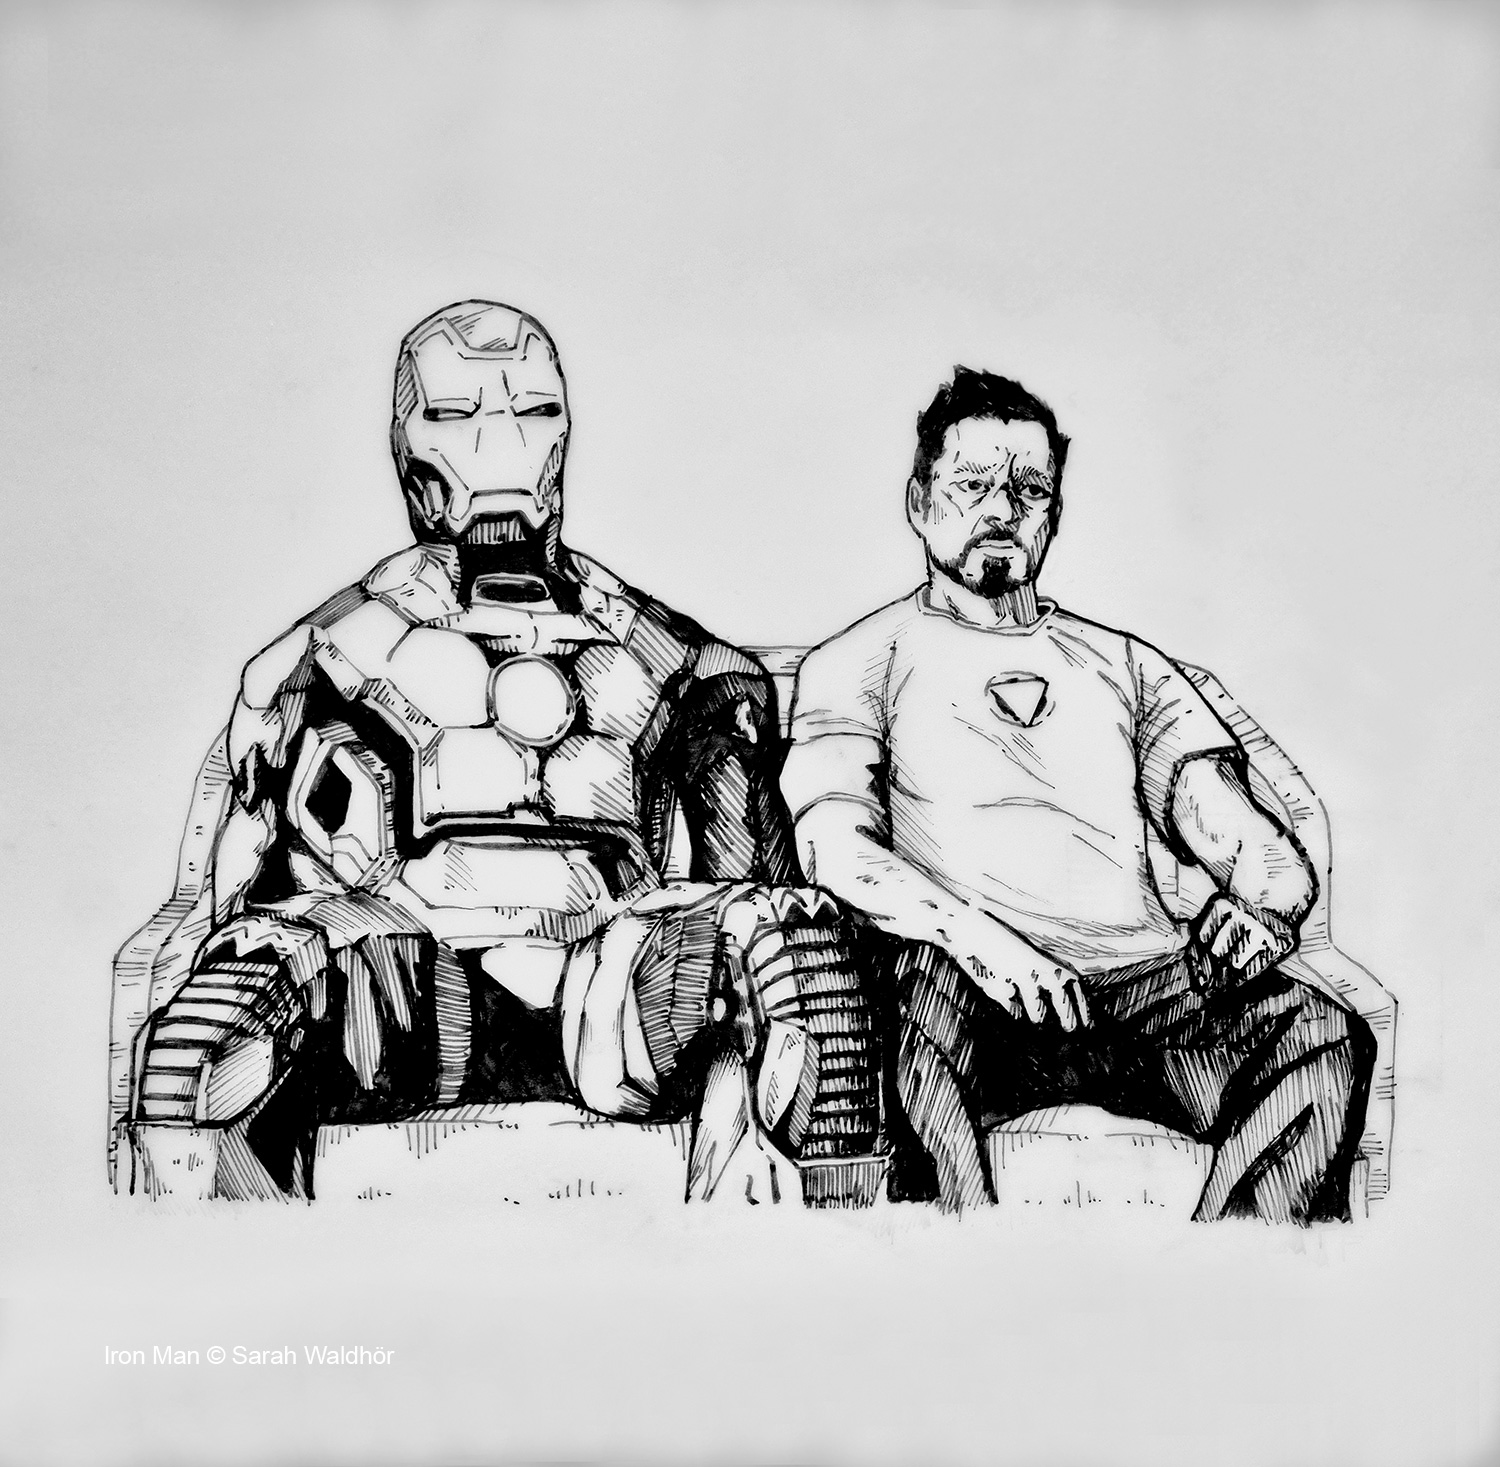 Iron Man © Sarah Waldhör